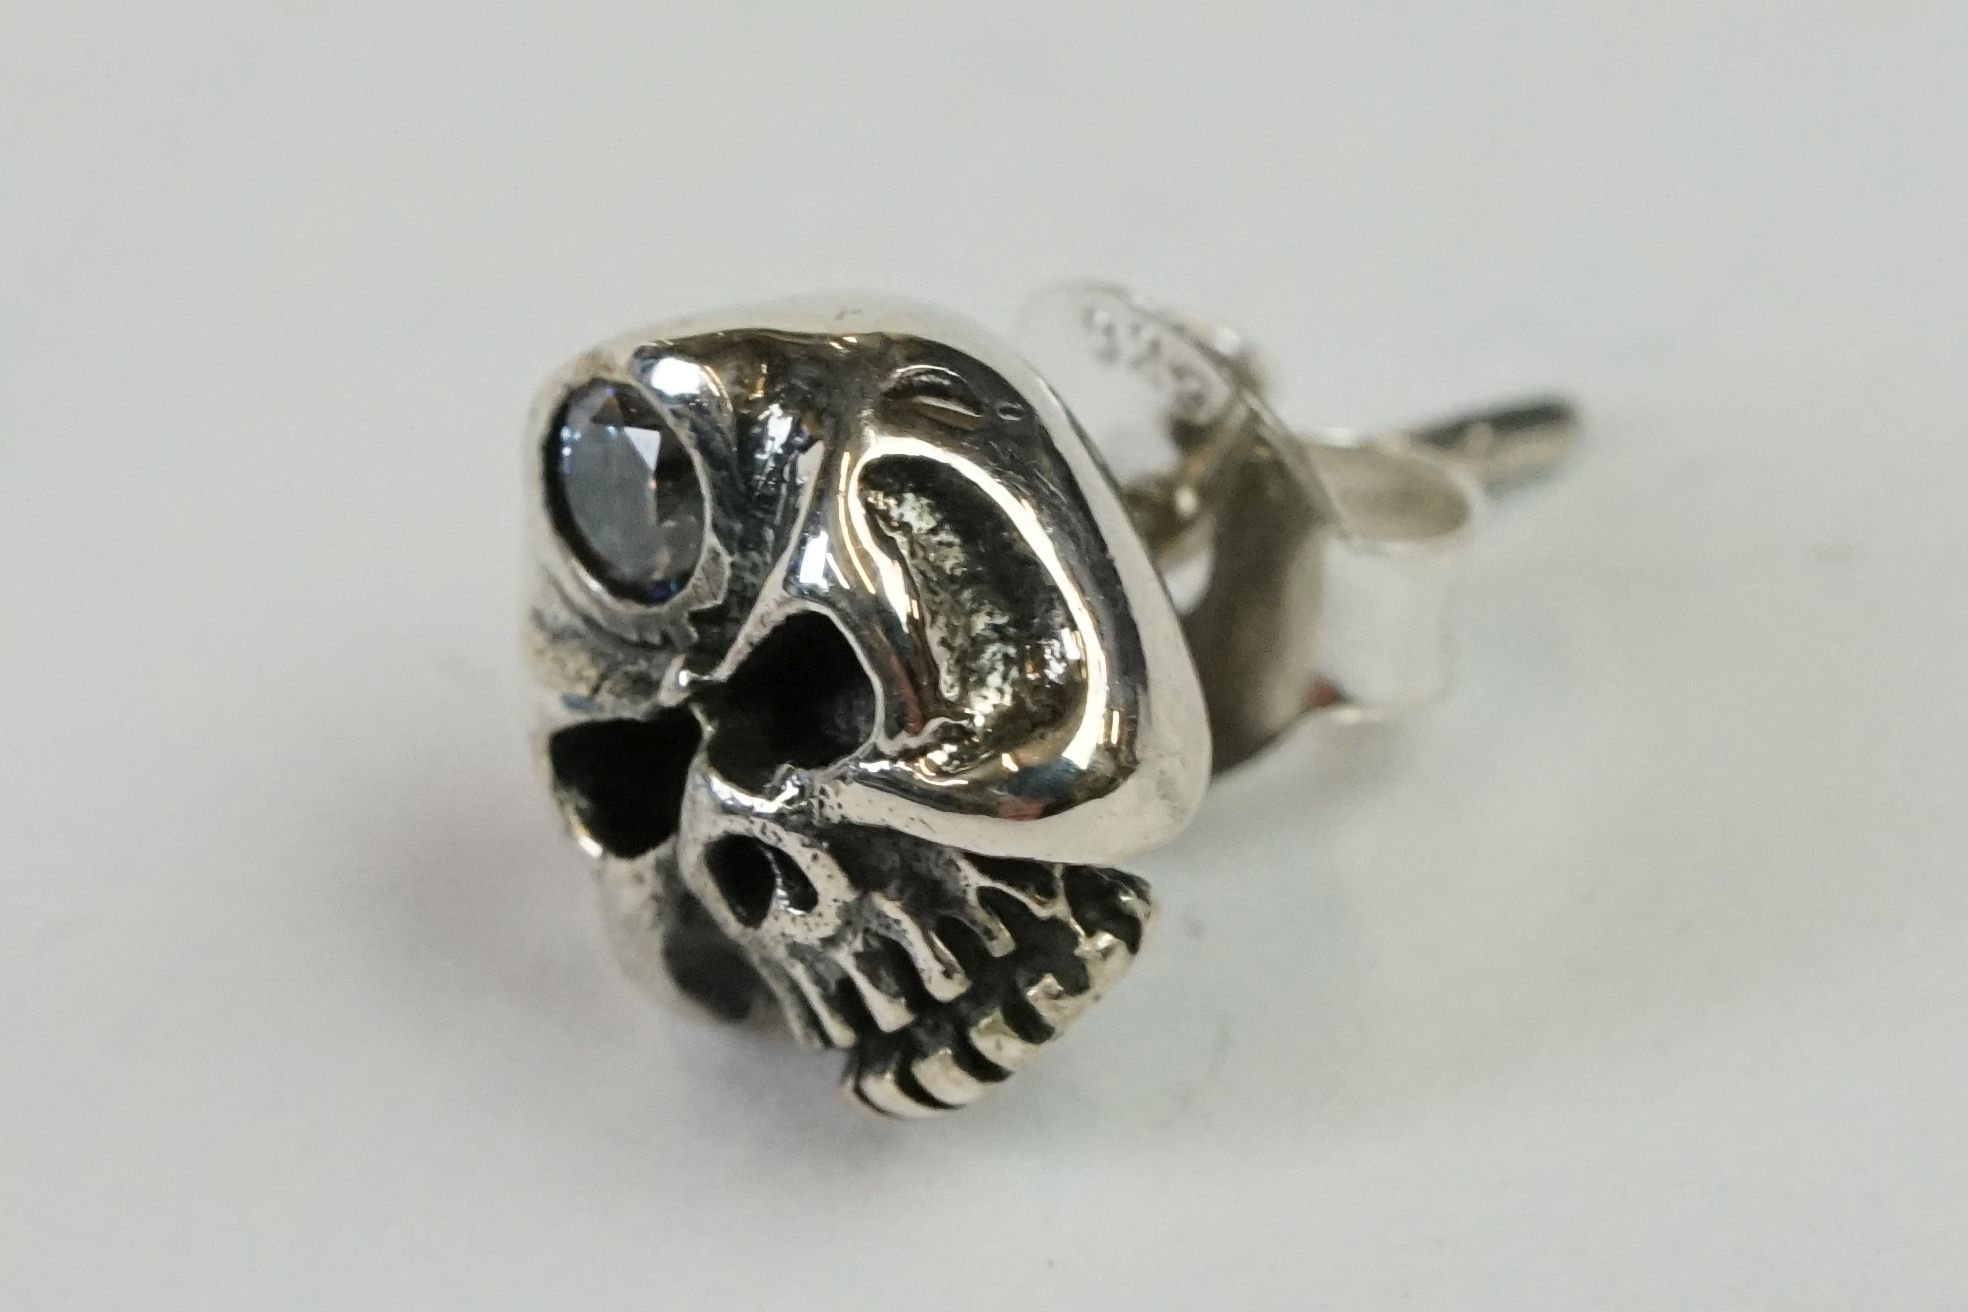 Pair of Silver Skull Headed Stud Earrings - Image 5 of 7